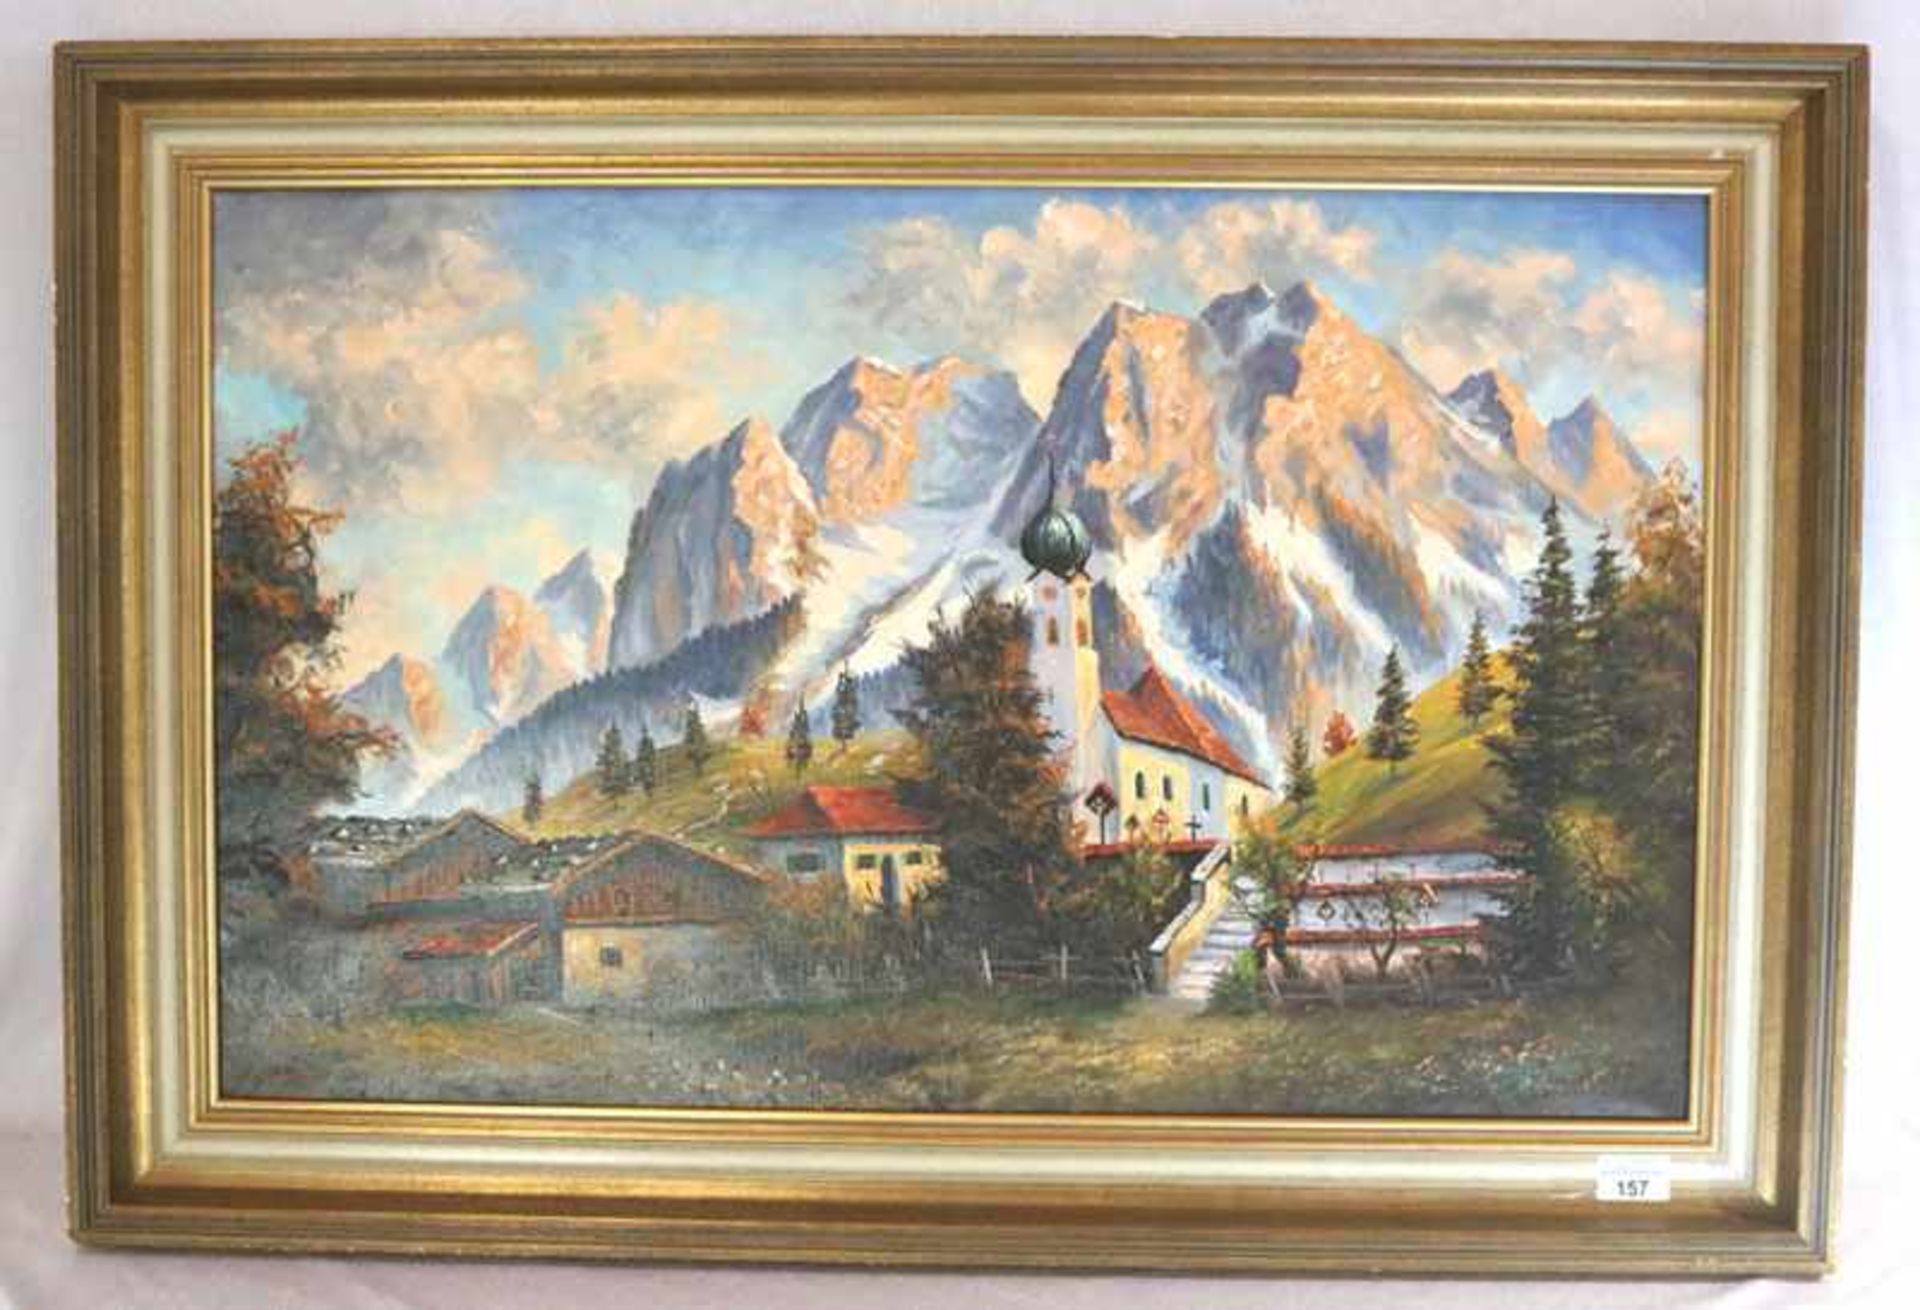 Gemälde ÖL/LW 'Grainauer Kirche mit Wettersteingebirge', signiert Schmid, gerahmt, Rahmen leicht